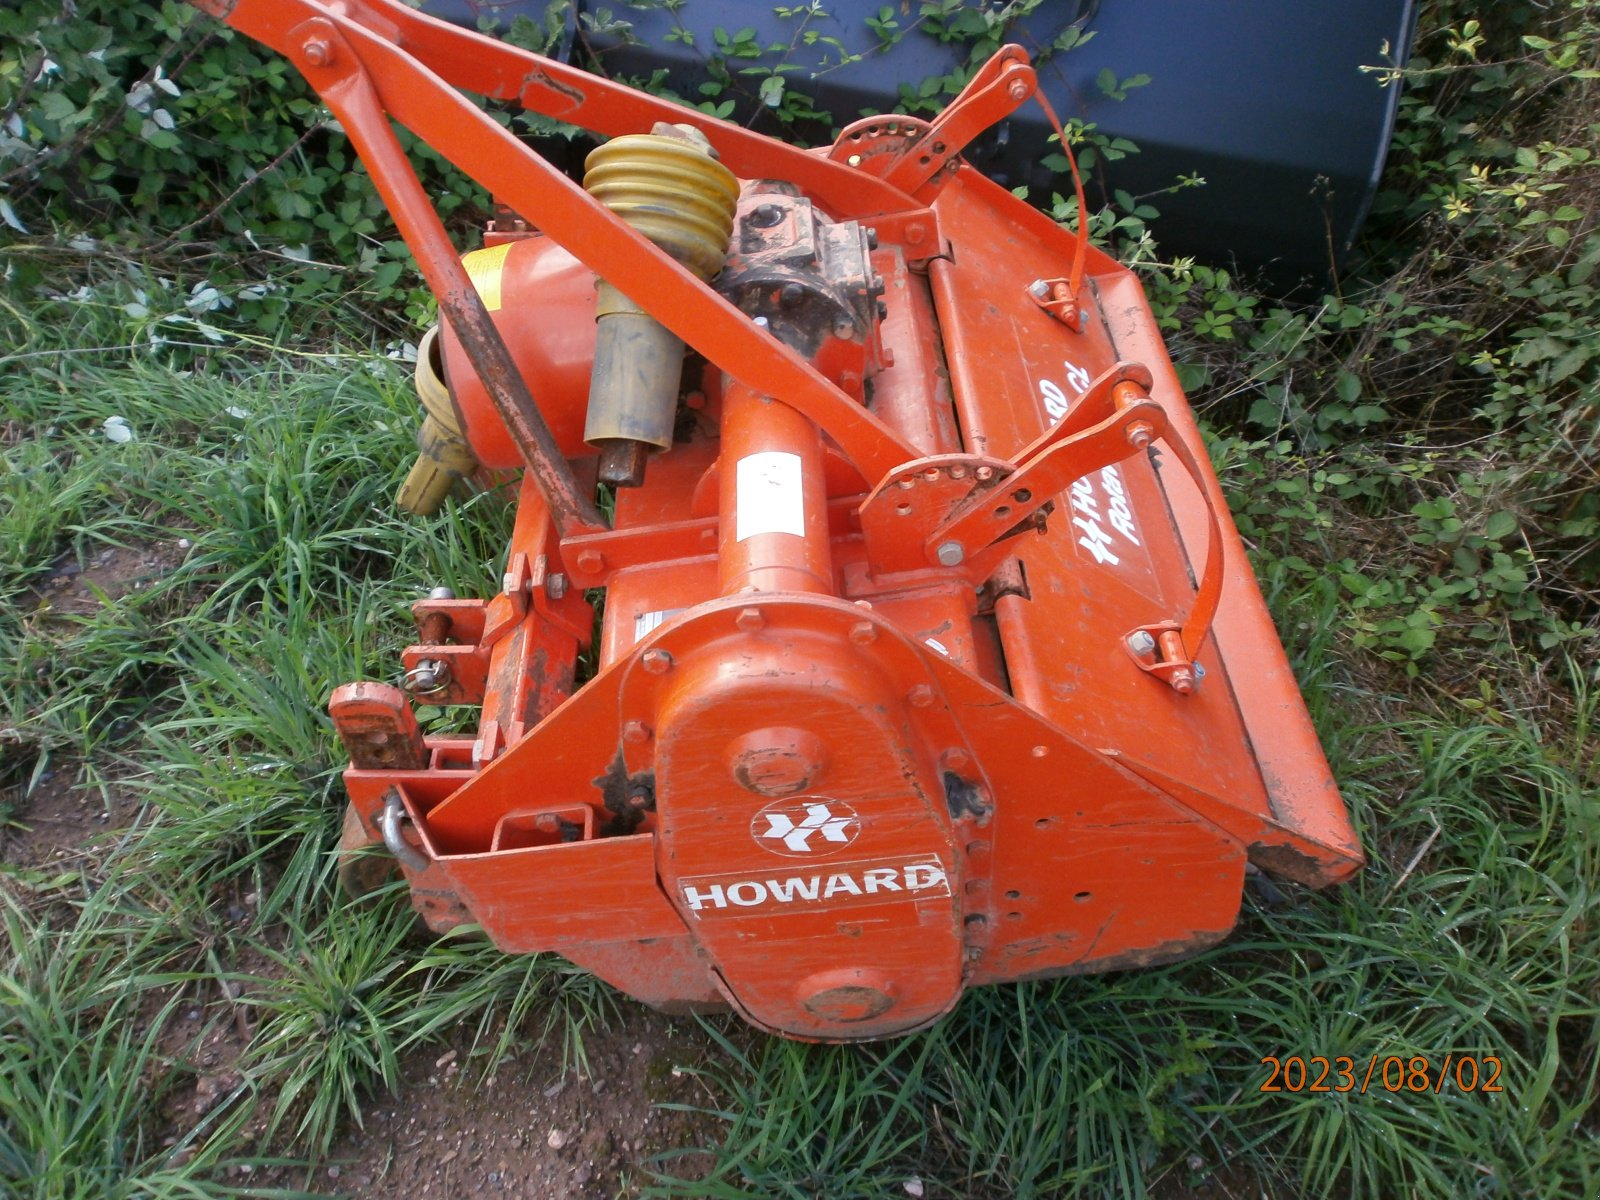 Fräse des Typs Howard CL 95, Gebrauchtmaschine in Schwalbach (Bild 3)